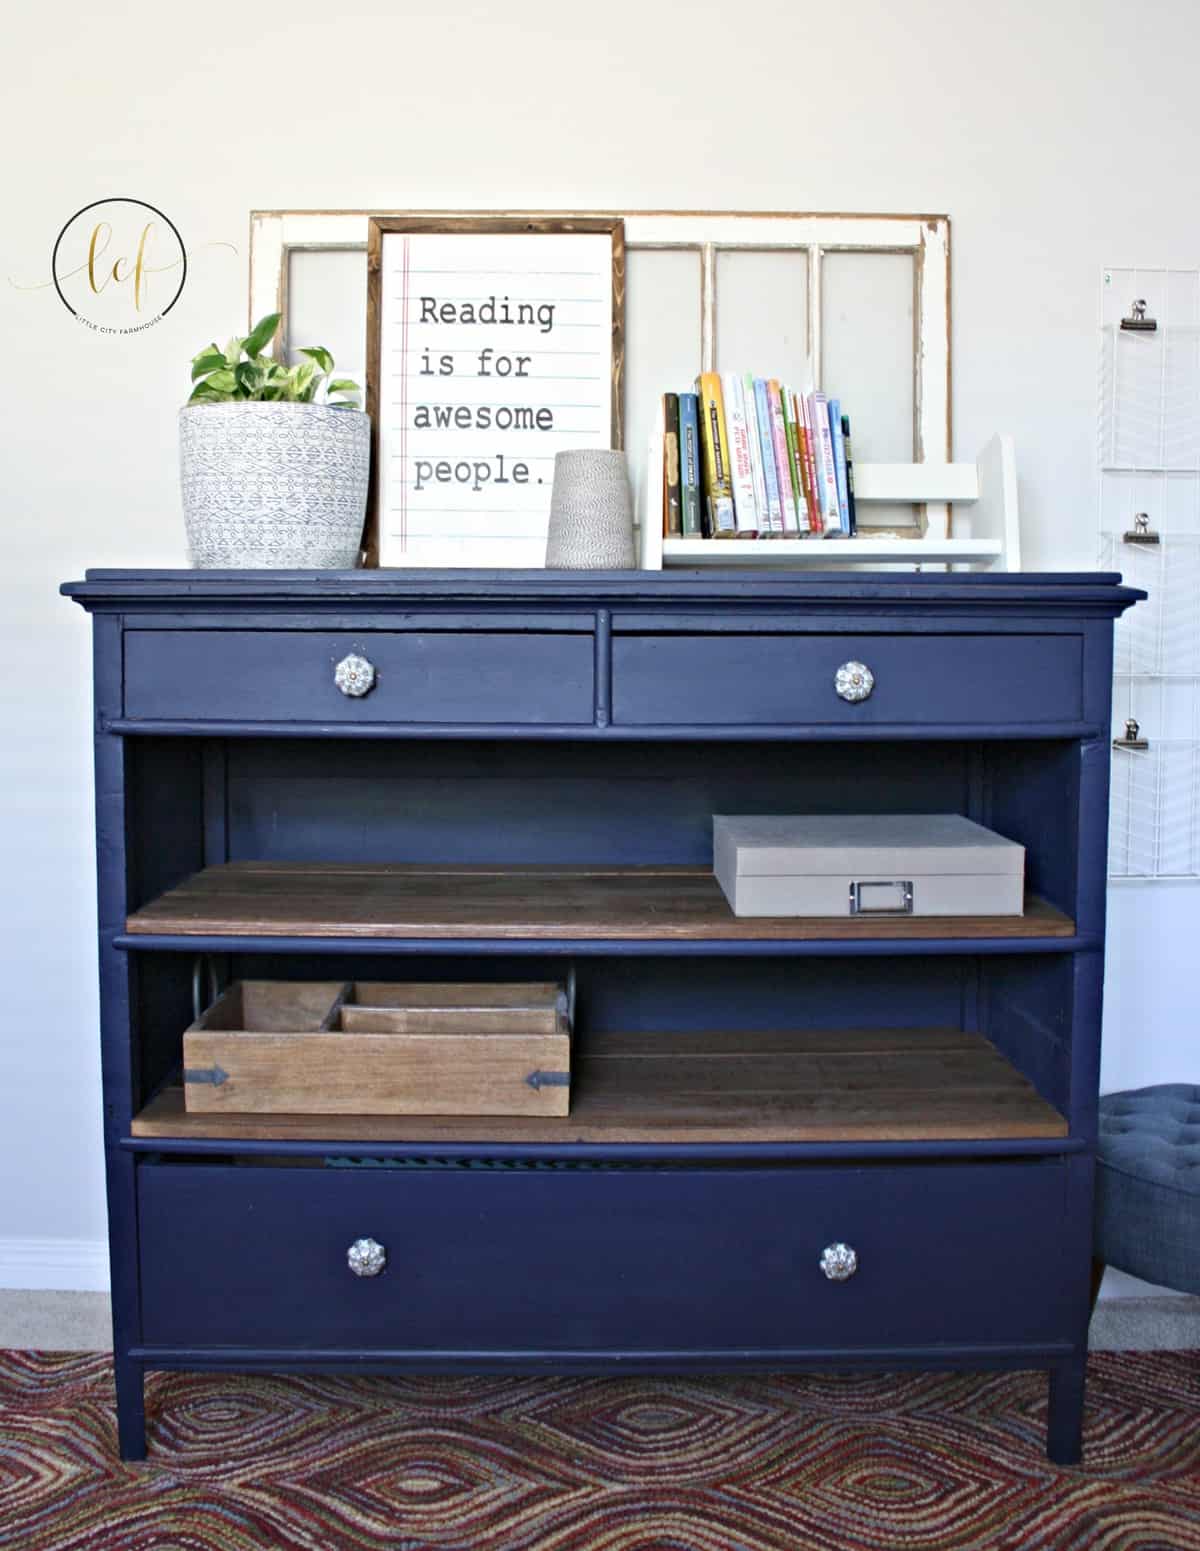 Navy Bookshelf #DIY #furniturepaint #paintedfurniture #chalkpaint #homedecor #upcycle #dresser #bookshelf #storage #navy #blue #repurpose #countrychicpaint - blog.countrychicpaint.com